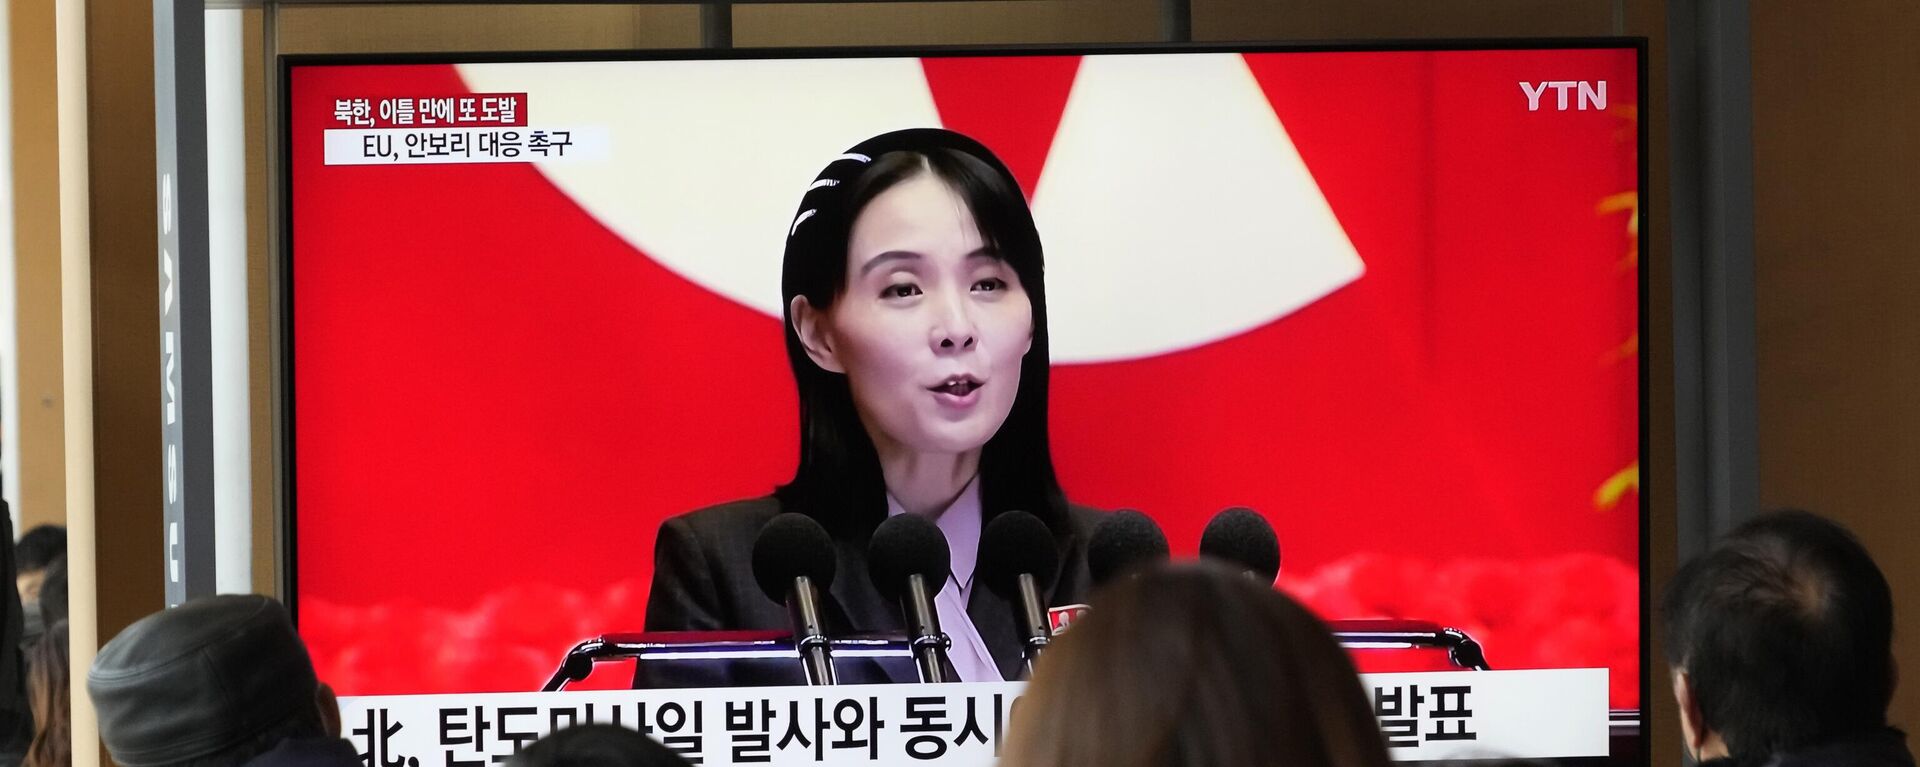 Güney Kore başkenti Seul'deki bir tren istasyonunu kullanan yolcular, dev ekranlardan haber yayını sırasında Kuzey Kore lideri Kim Jong-un'un kız kardeşi Kim Yo-jong'un görüntüsüne bakarken - Sputnik Türkiye, 1920, 11.07.2023